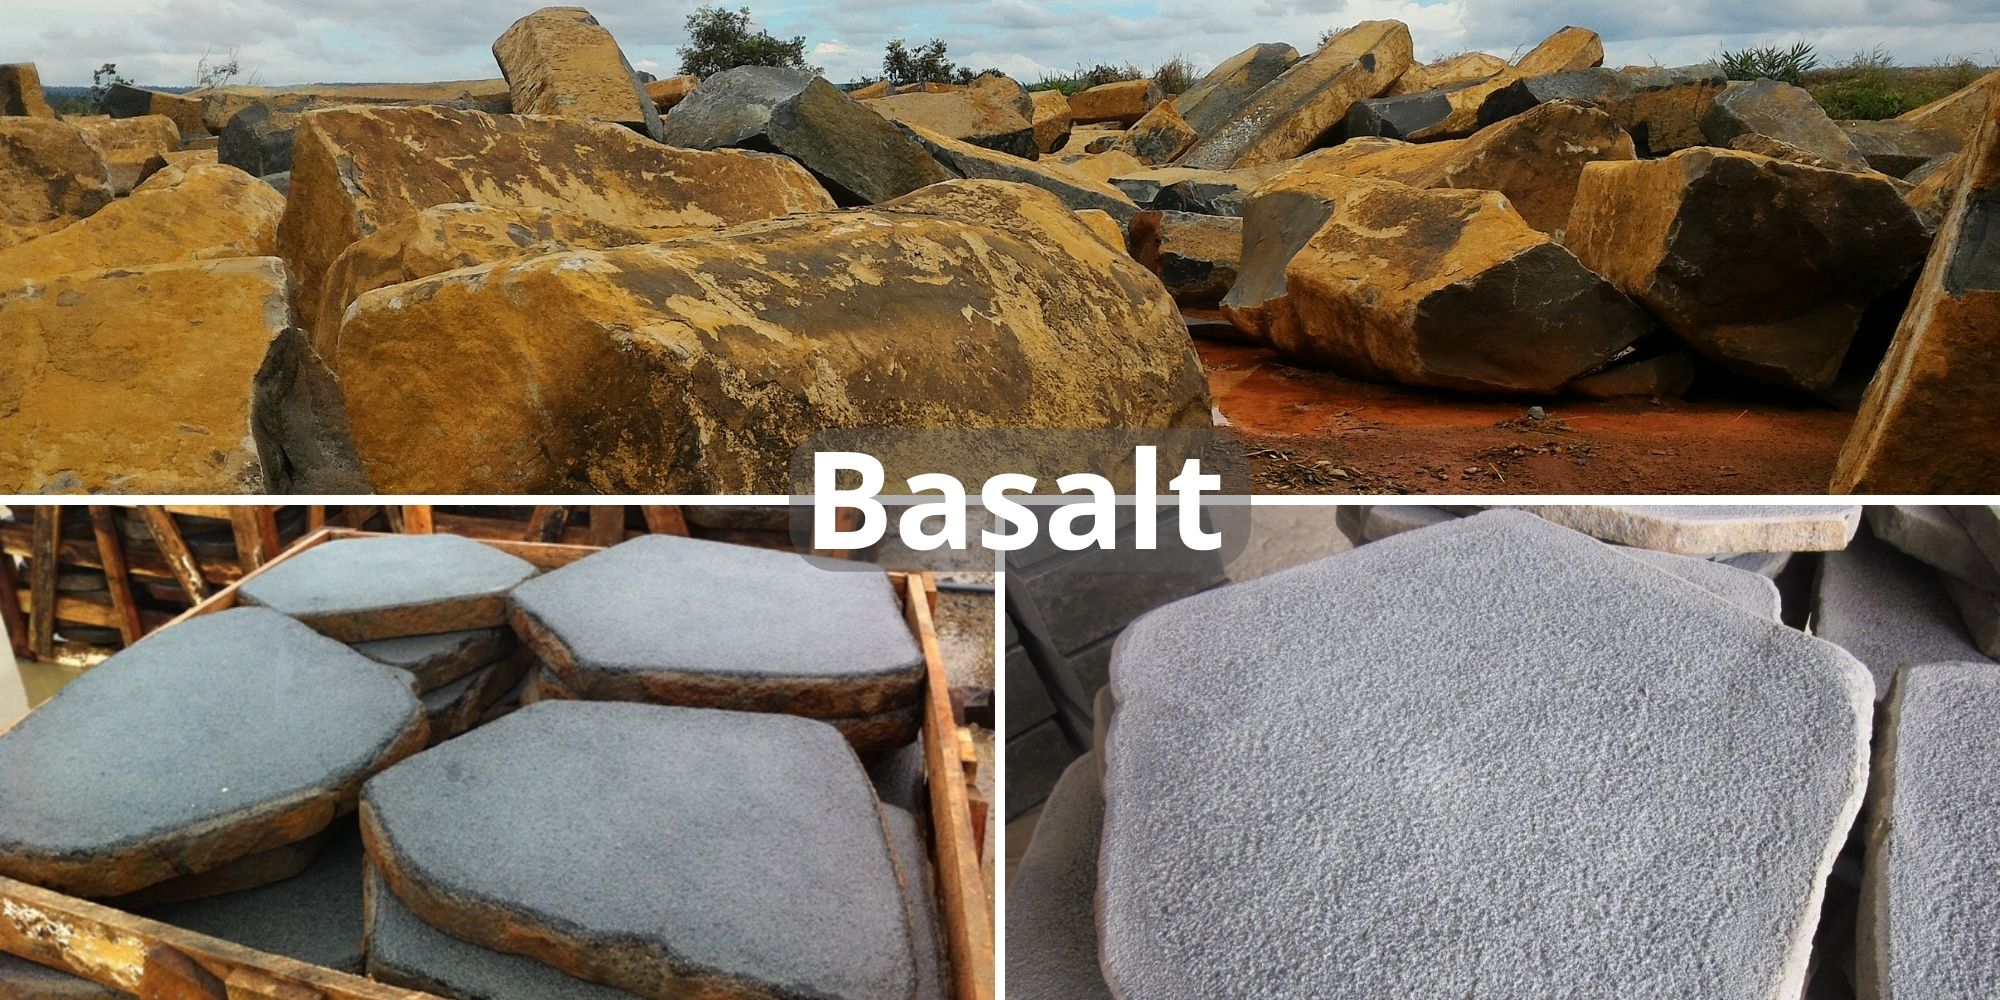 Basalt paving